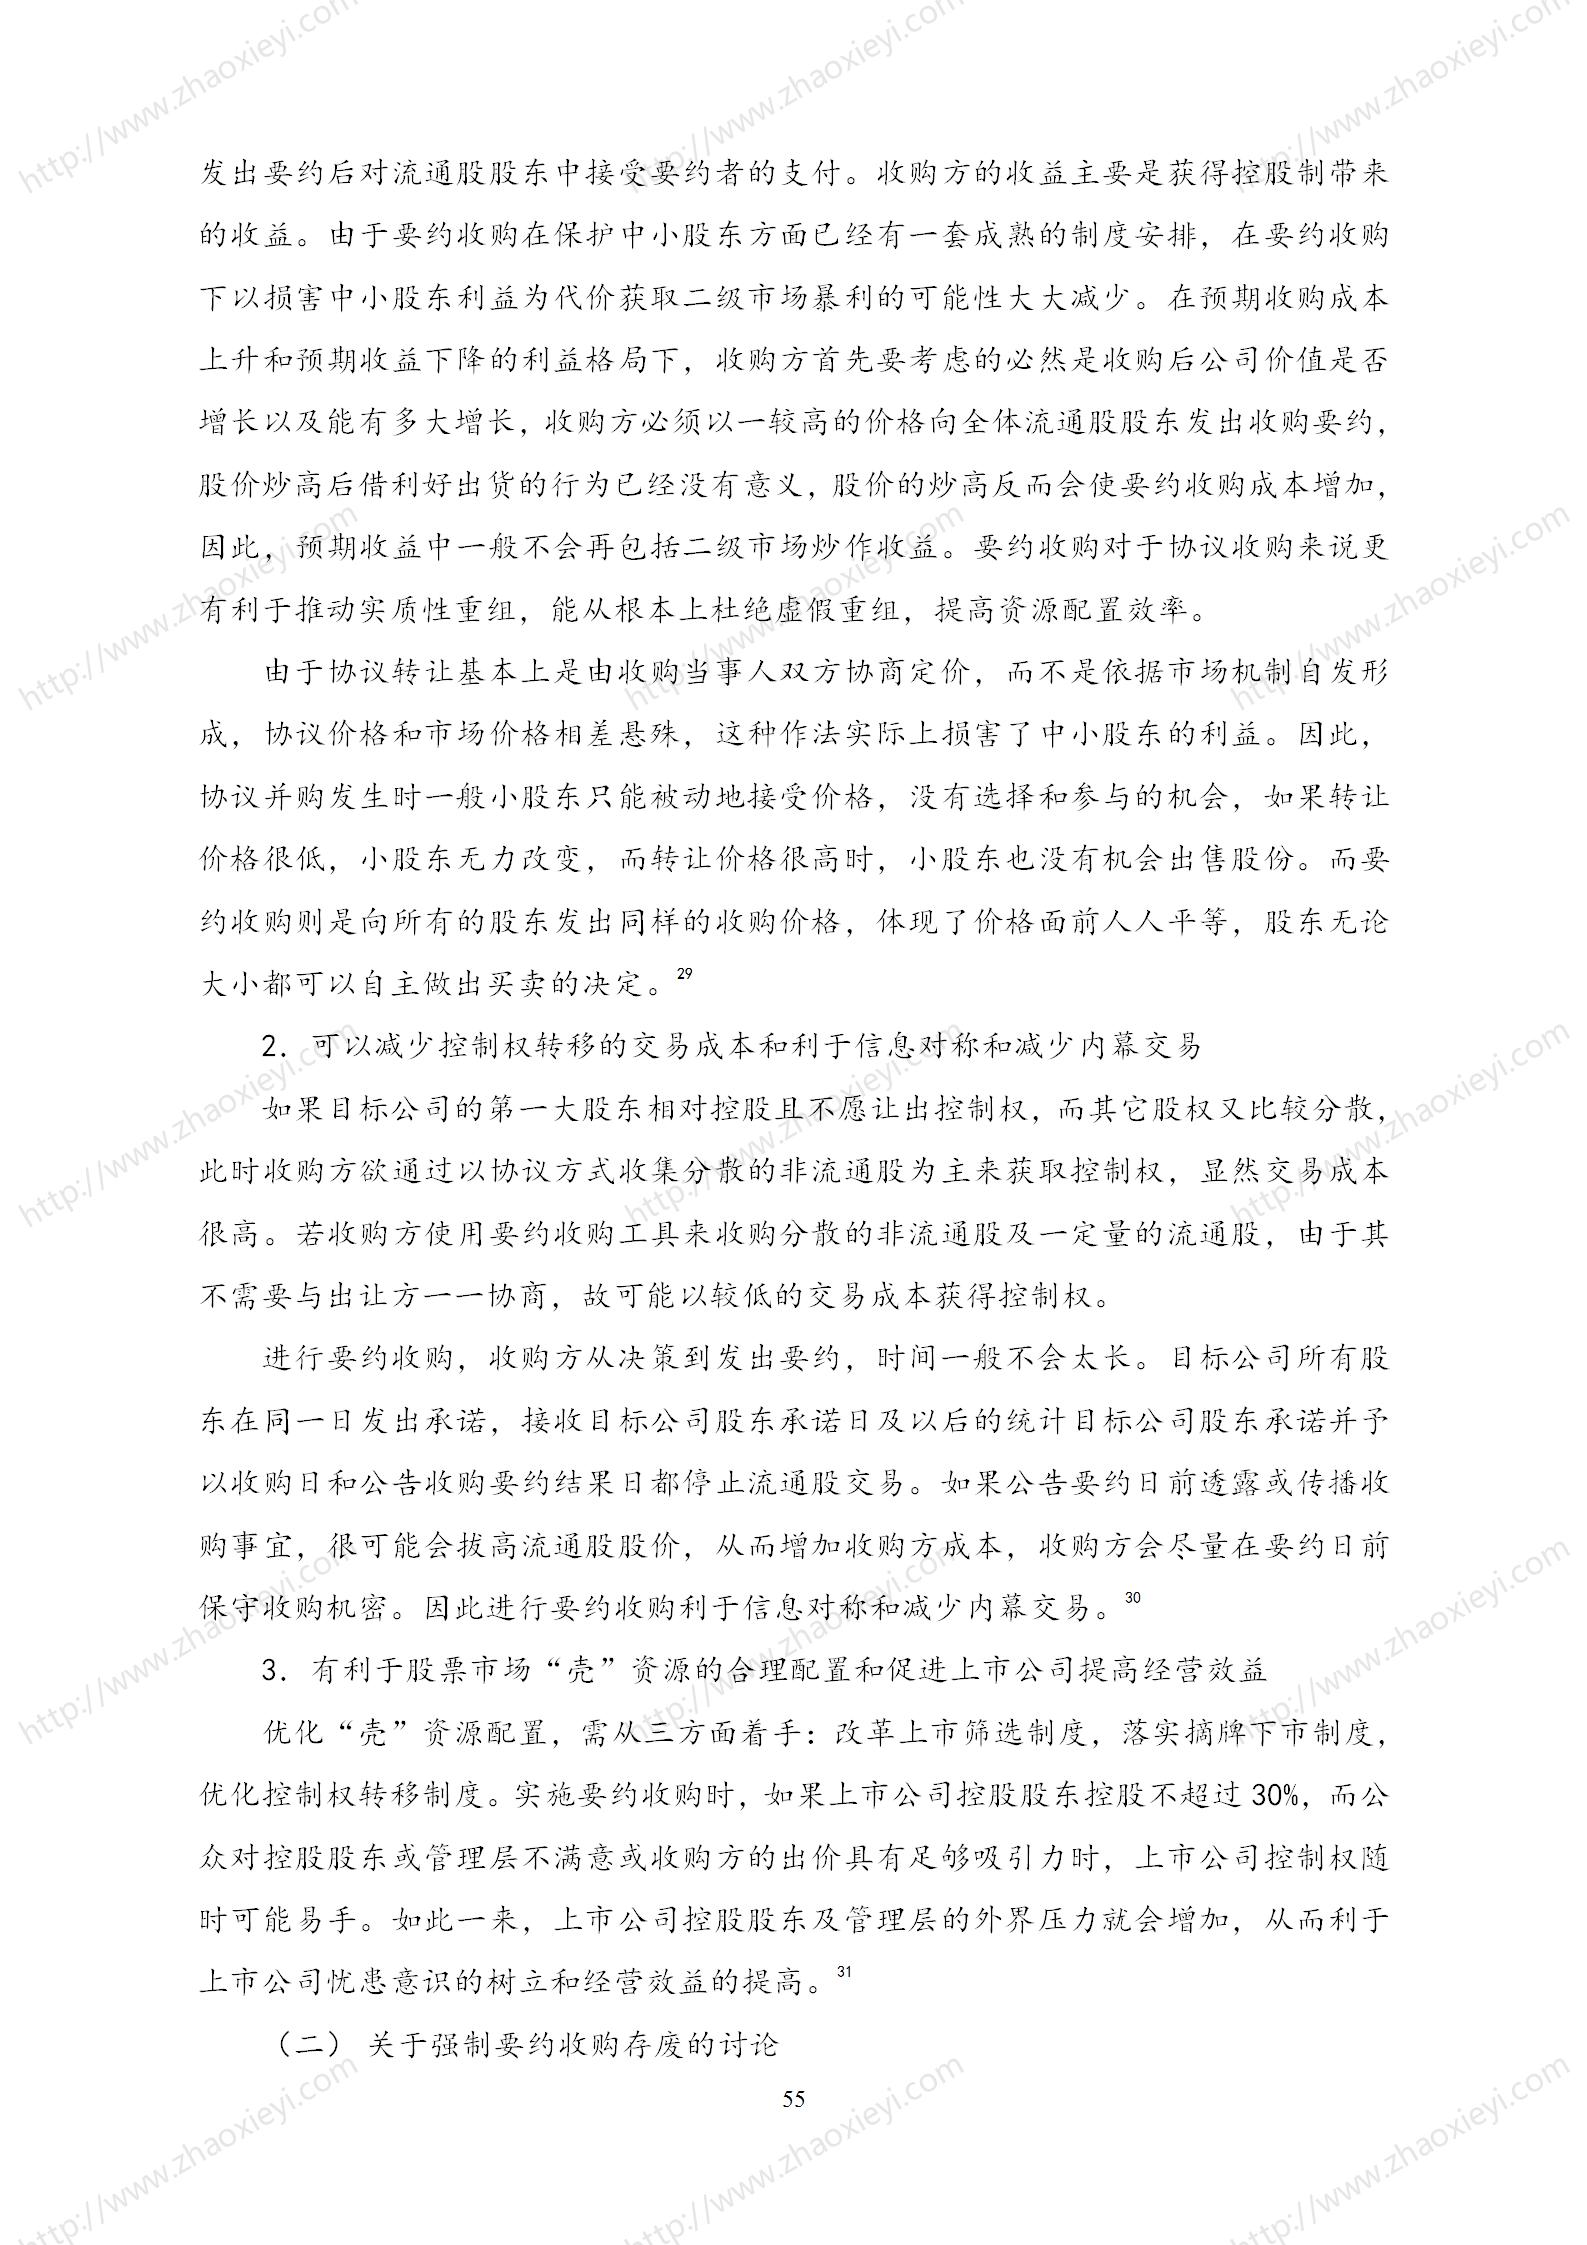 中国上市公司并购重组的模式研究_26.jpg